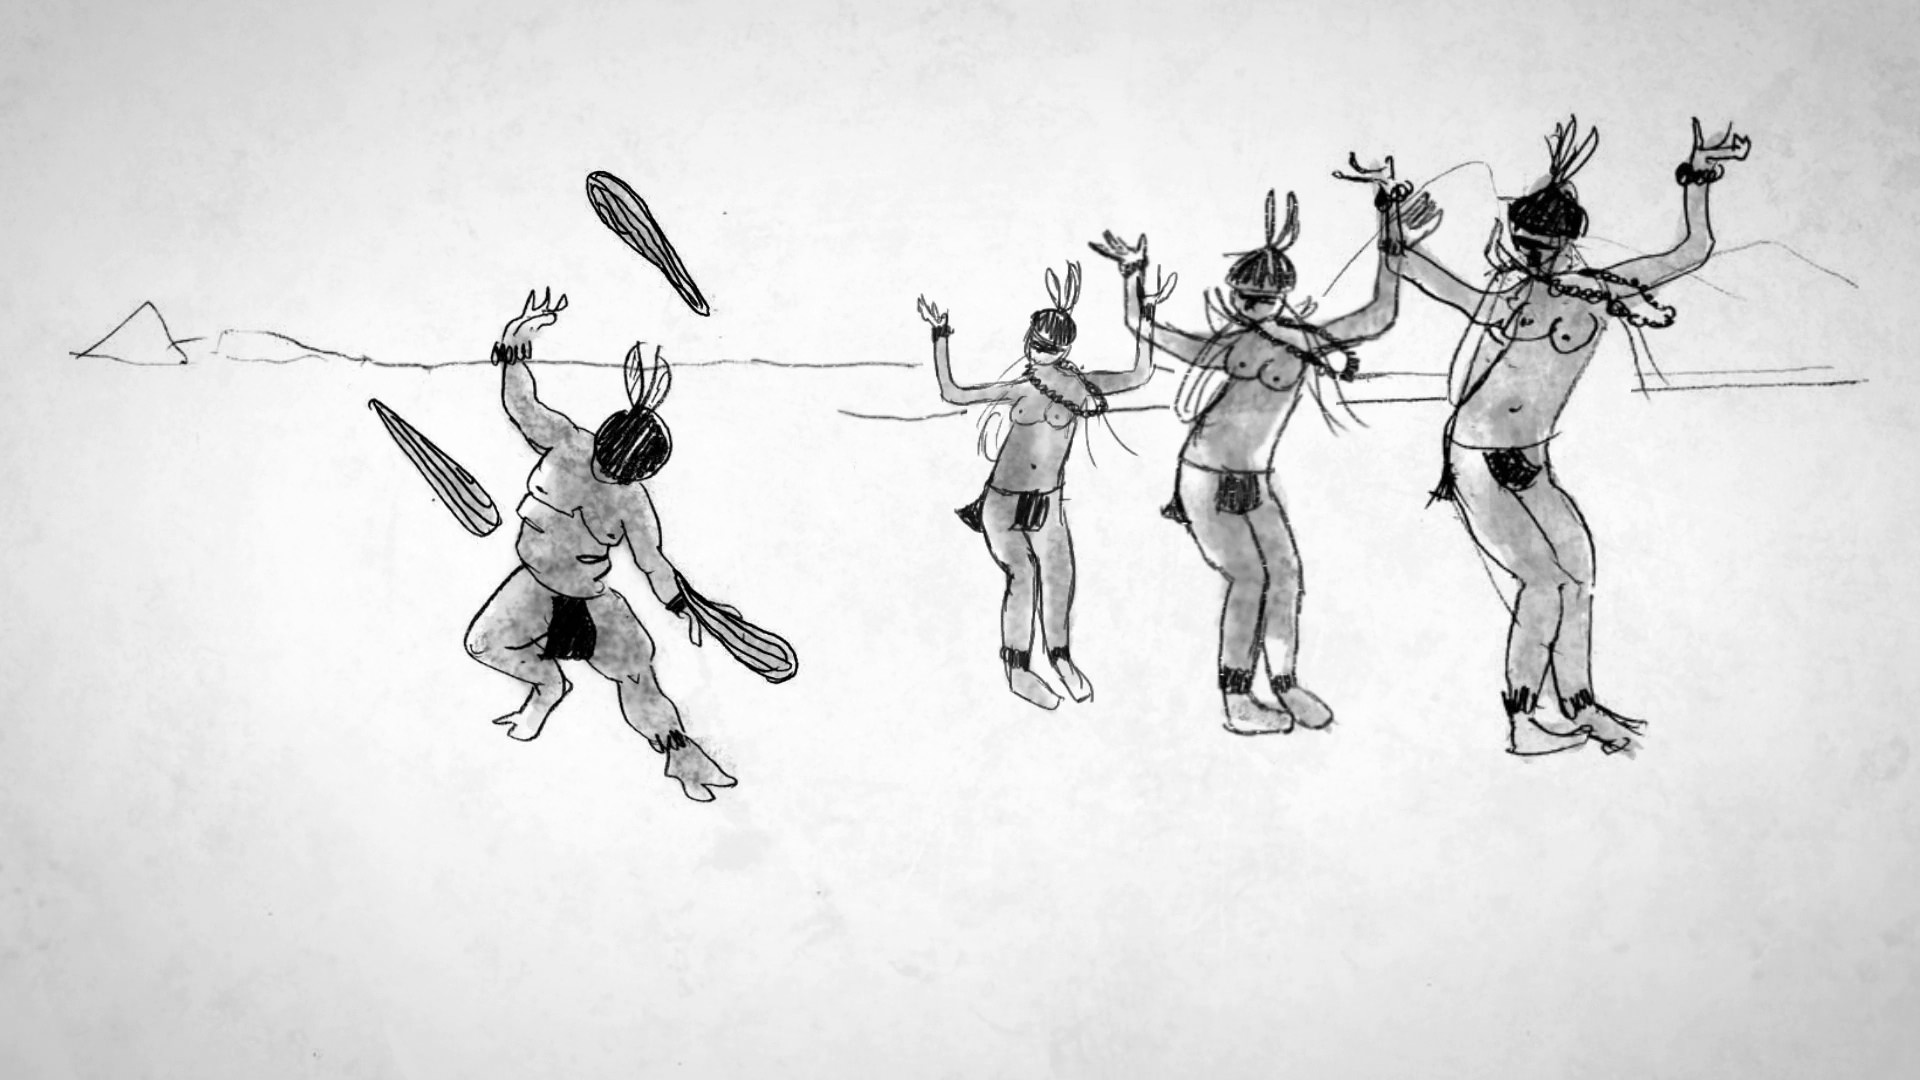 Quadro da animação. Um índio desenhado fazendo malabarismos com tacapes, enquanto três índias dançam ao seu lado.